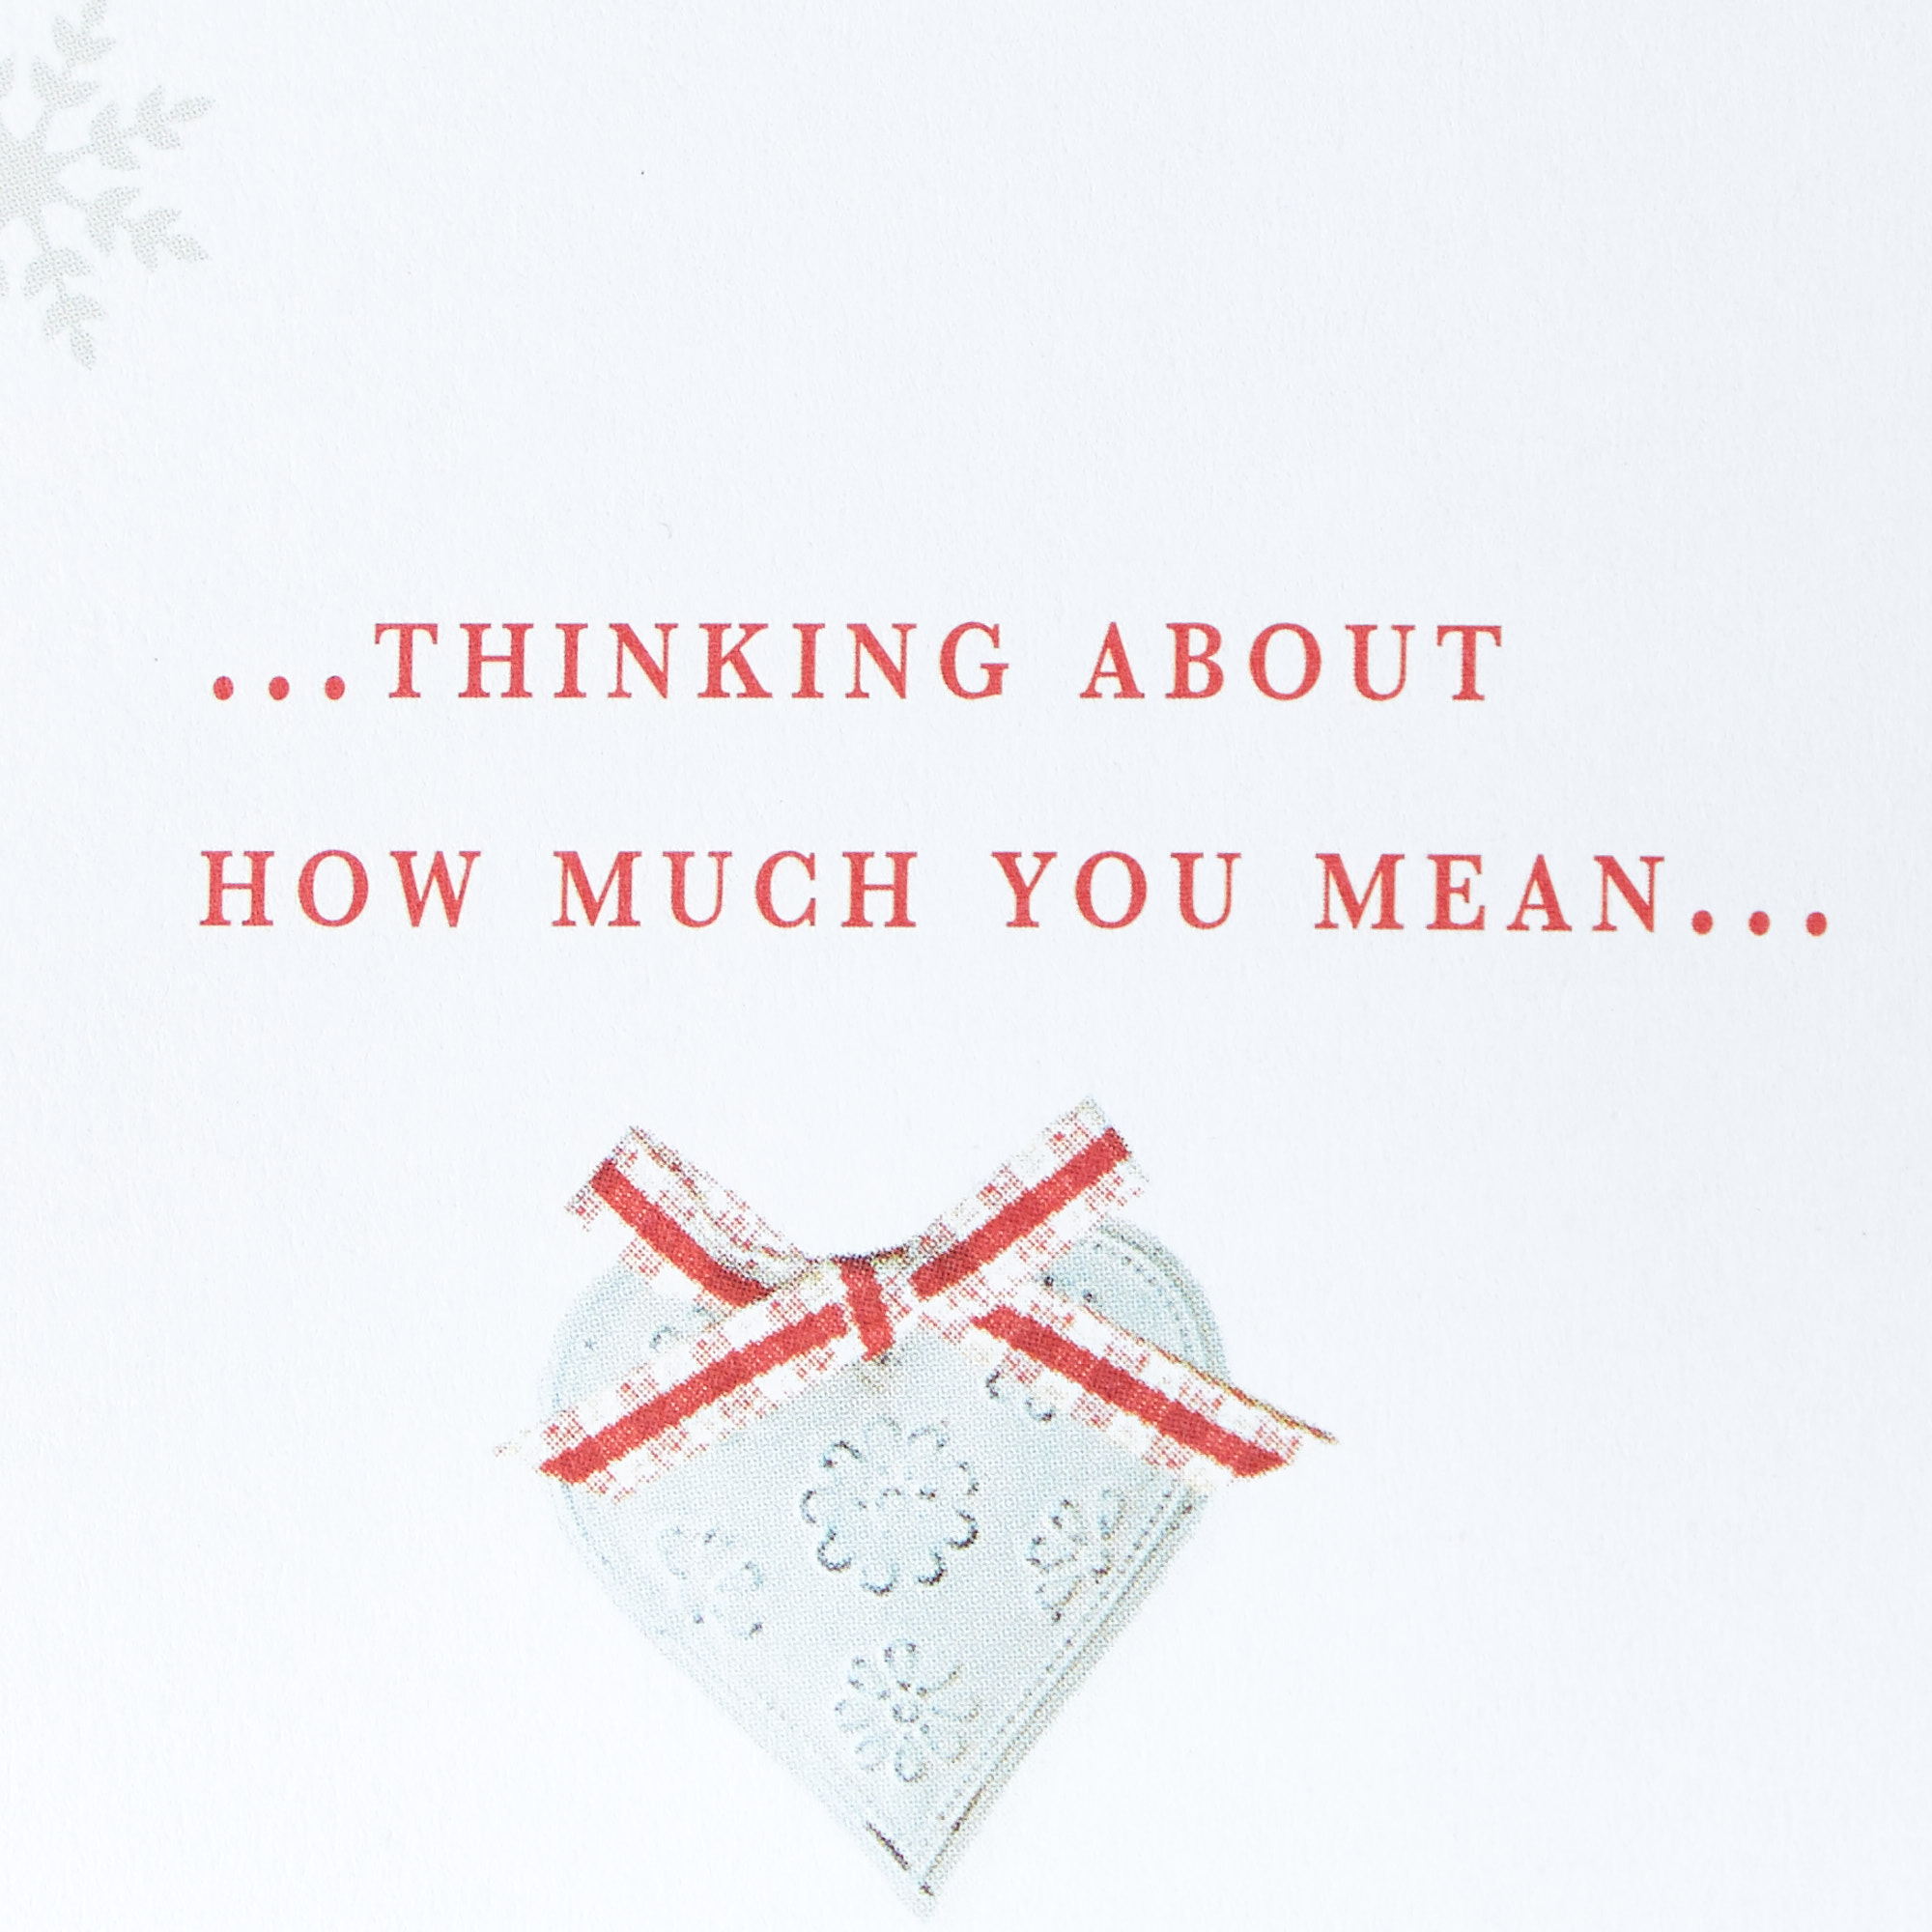 Christmas Card - Husband, Christmas Memories